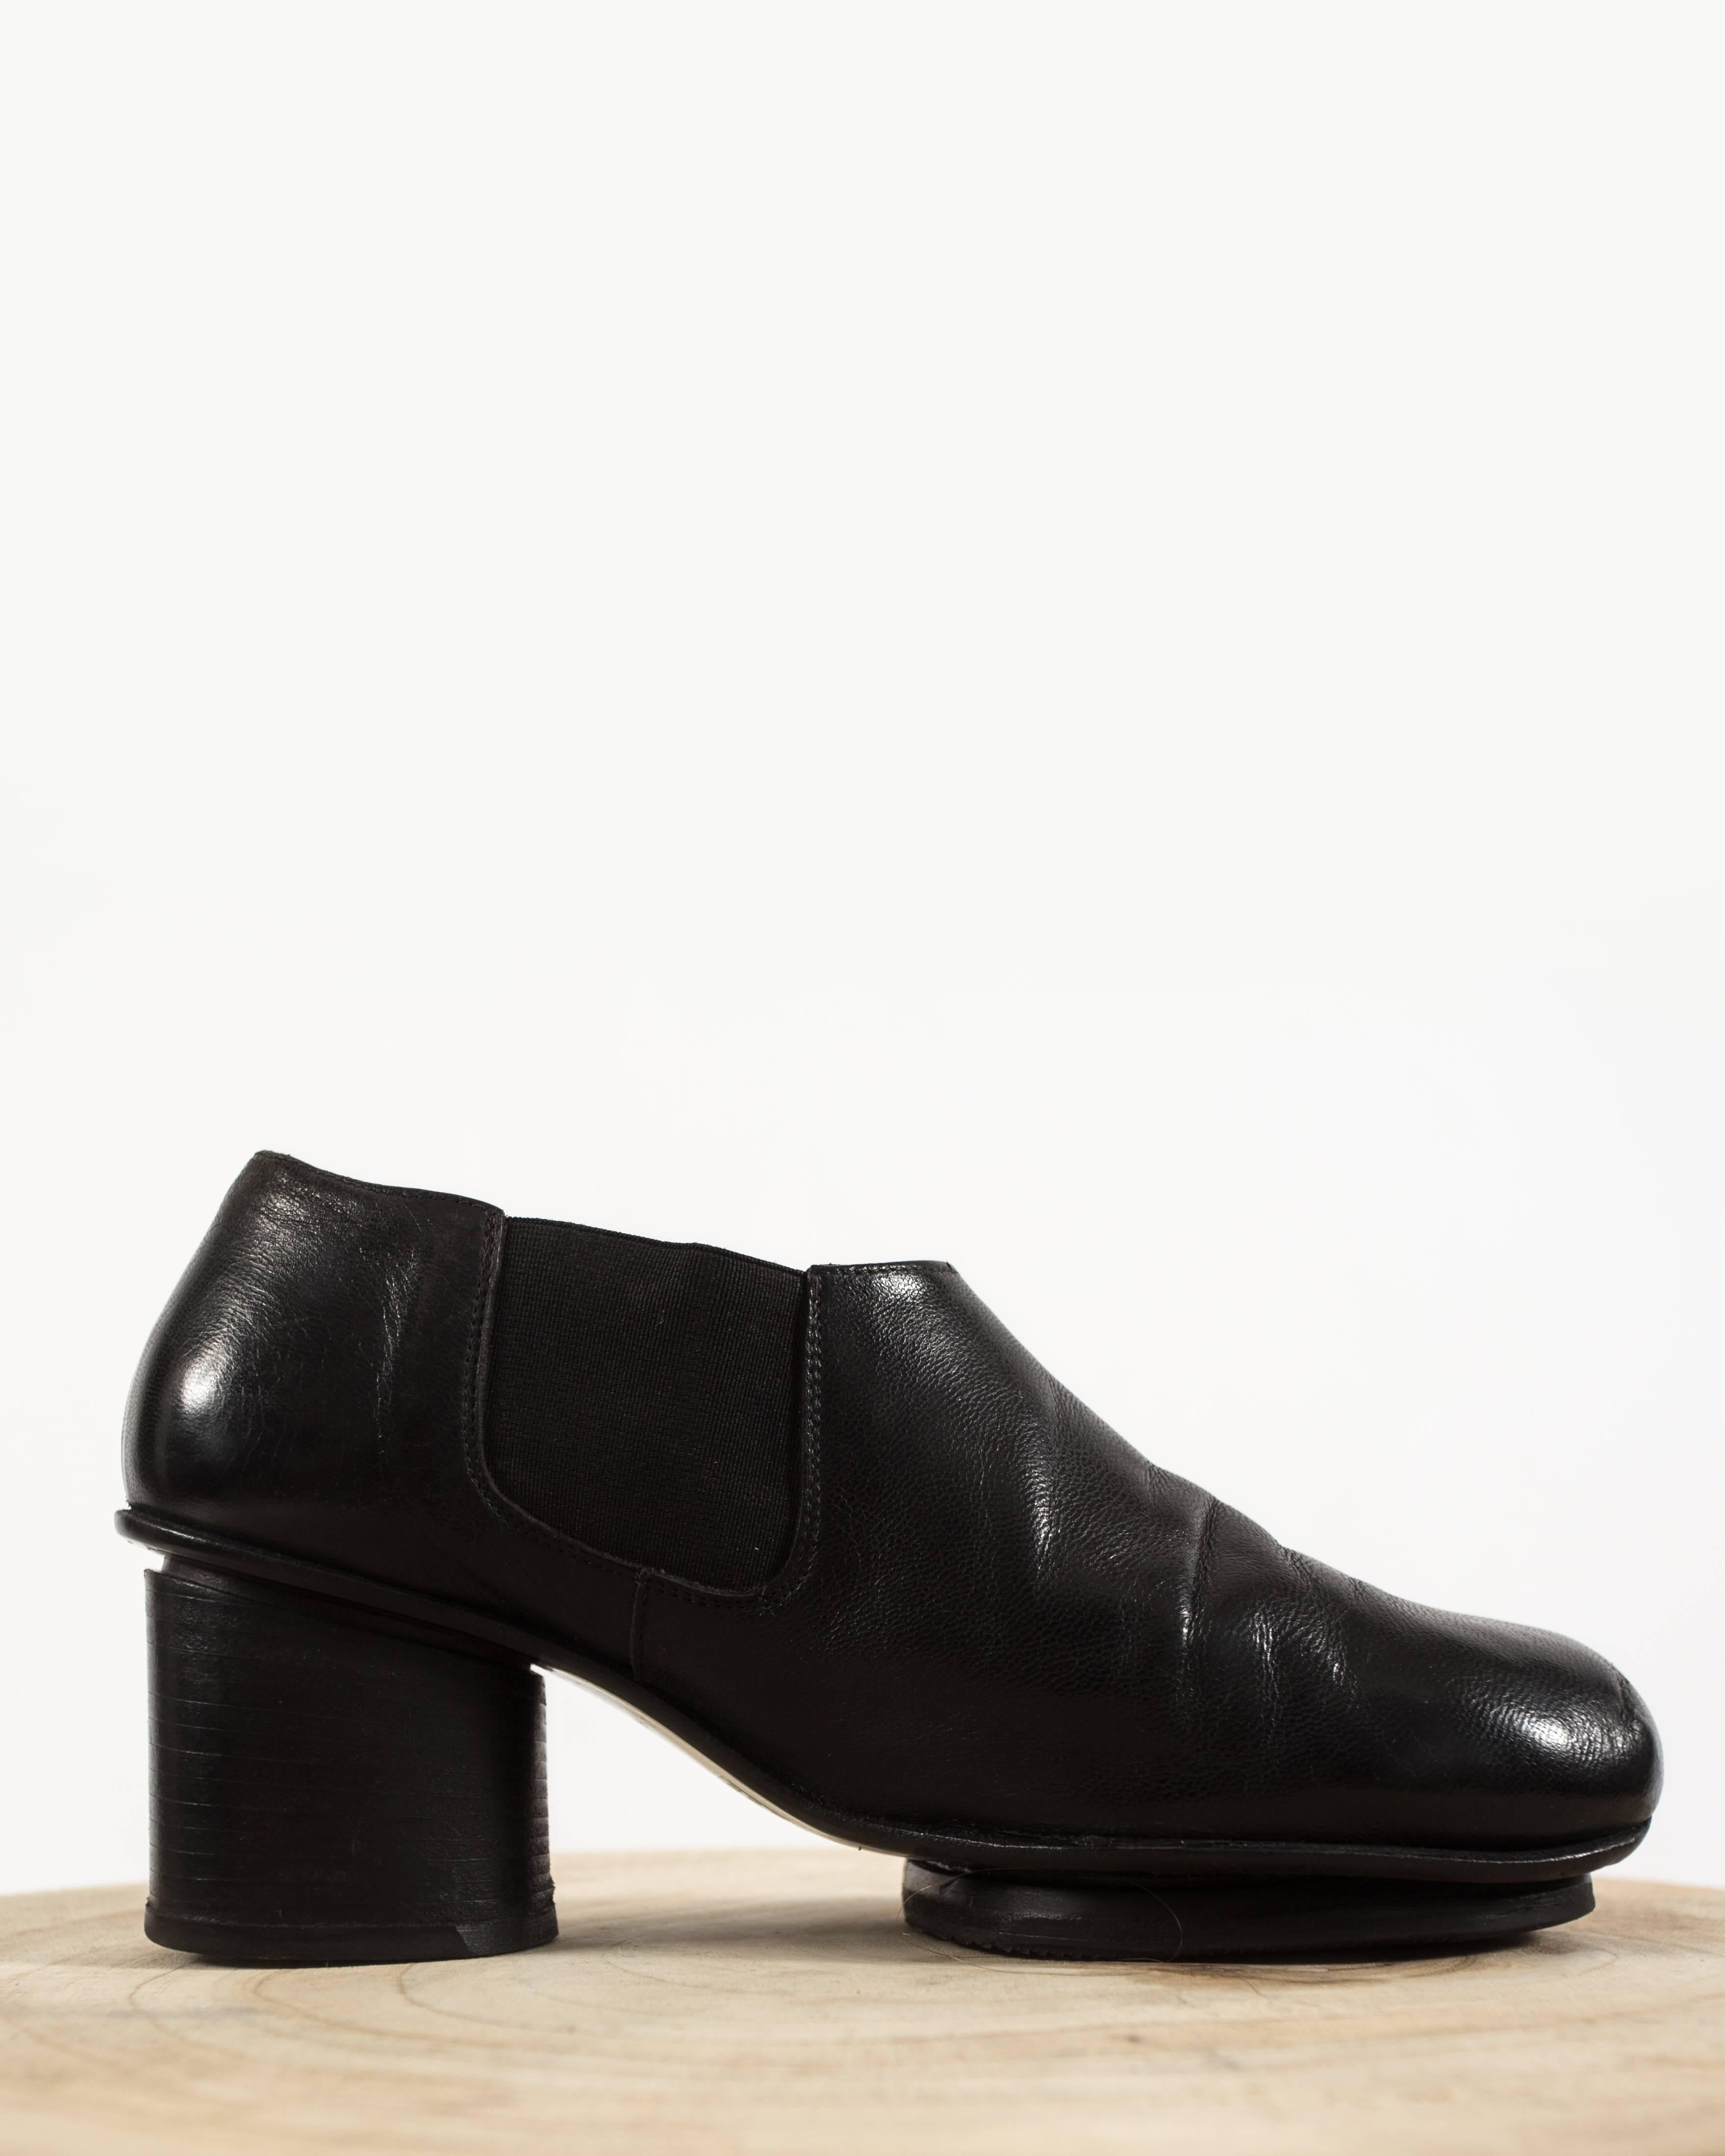 Voici les chaussures Martin/One 1999, une création remarquable et innovante de la collection iconique du créateur d'avant-garde.

Confectionnées en cuir noir luxueux, ces chaussures présentent des bouts ronds et un haut talon ovale en bois empilé,